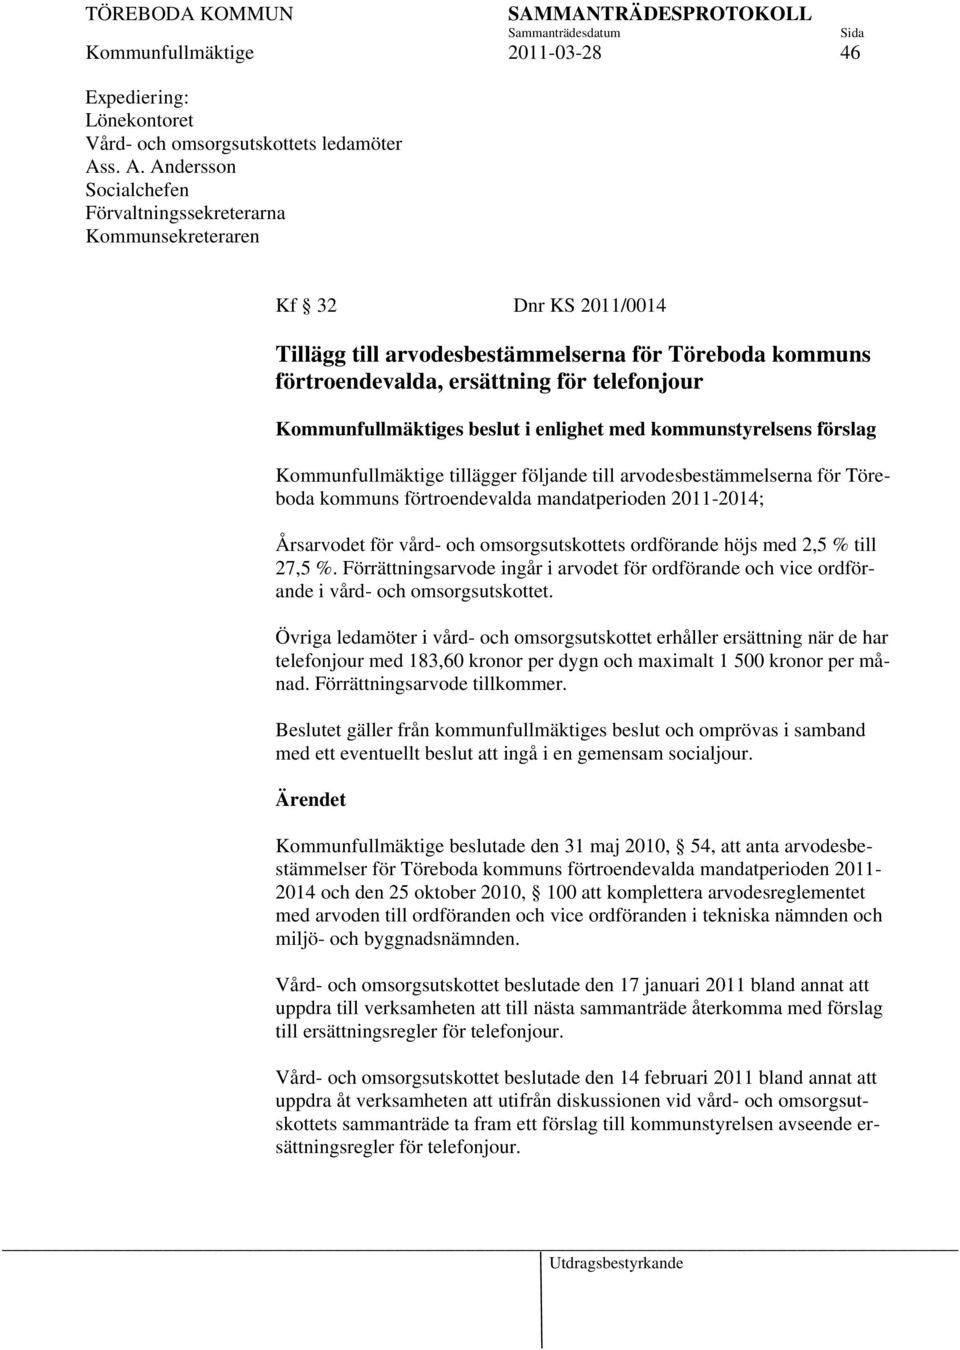 Kommunfullmäktiges beslut i enlighet med kommunstyrelsens förslag Kommunfullmäktige tillägger följande till arvodesbestämmelserna för Töreboda kommuns förtroendevalda mandatperioden 2011-2014;